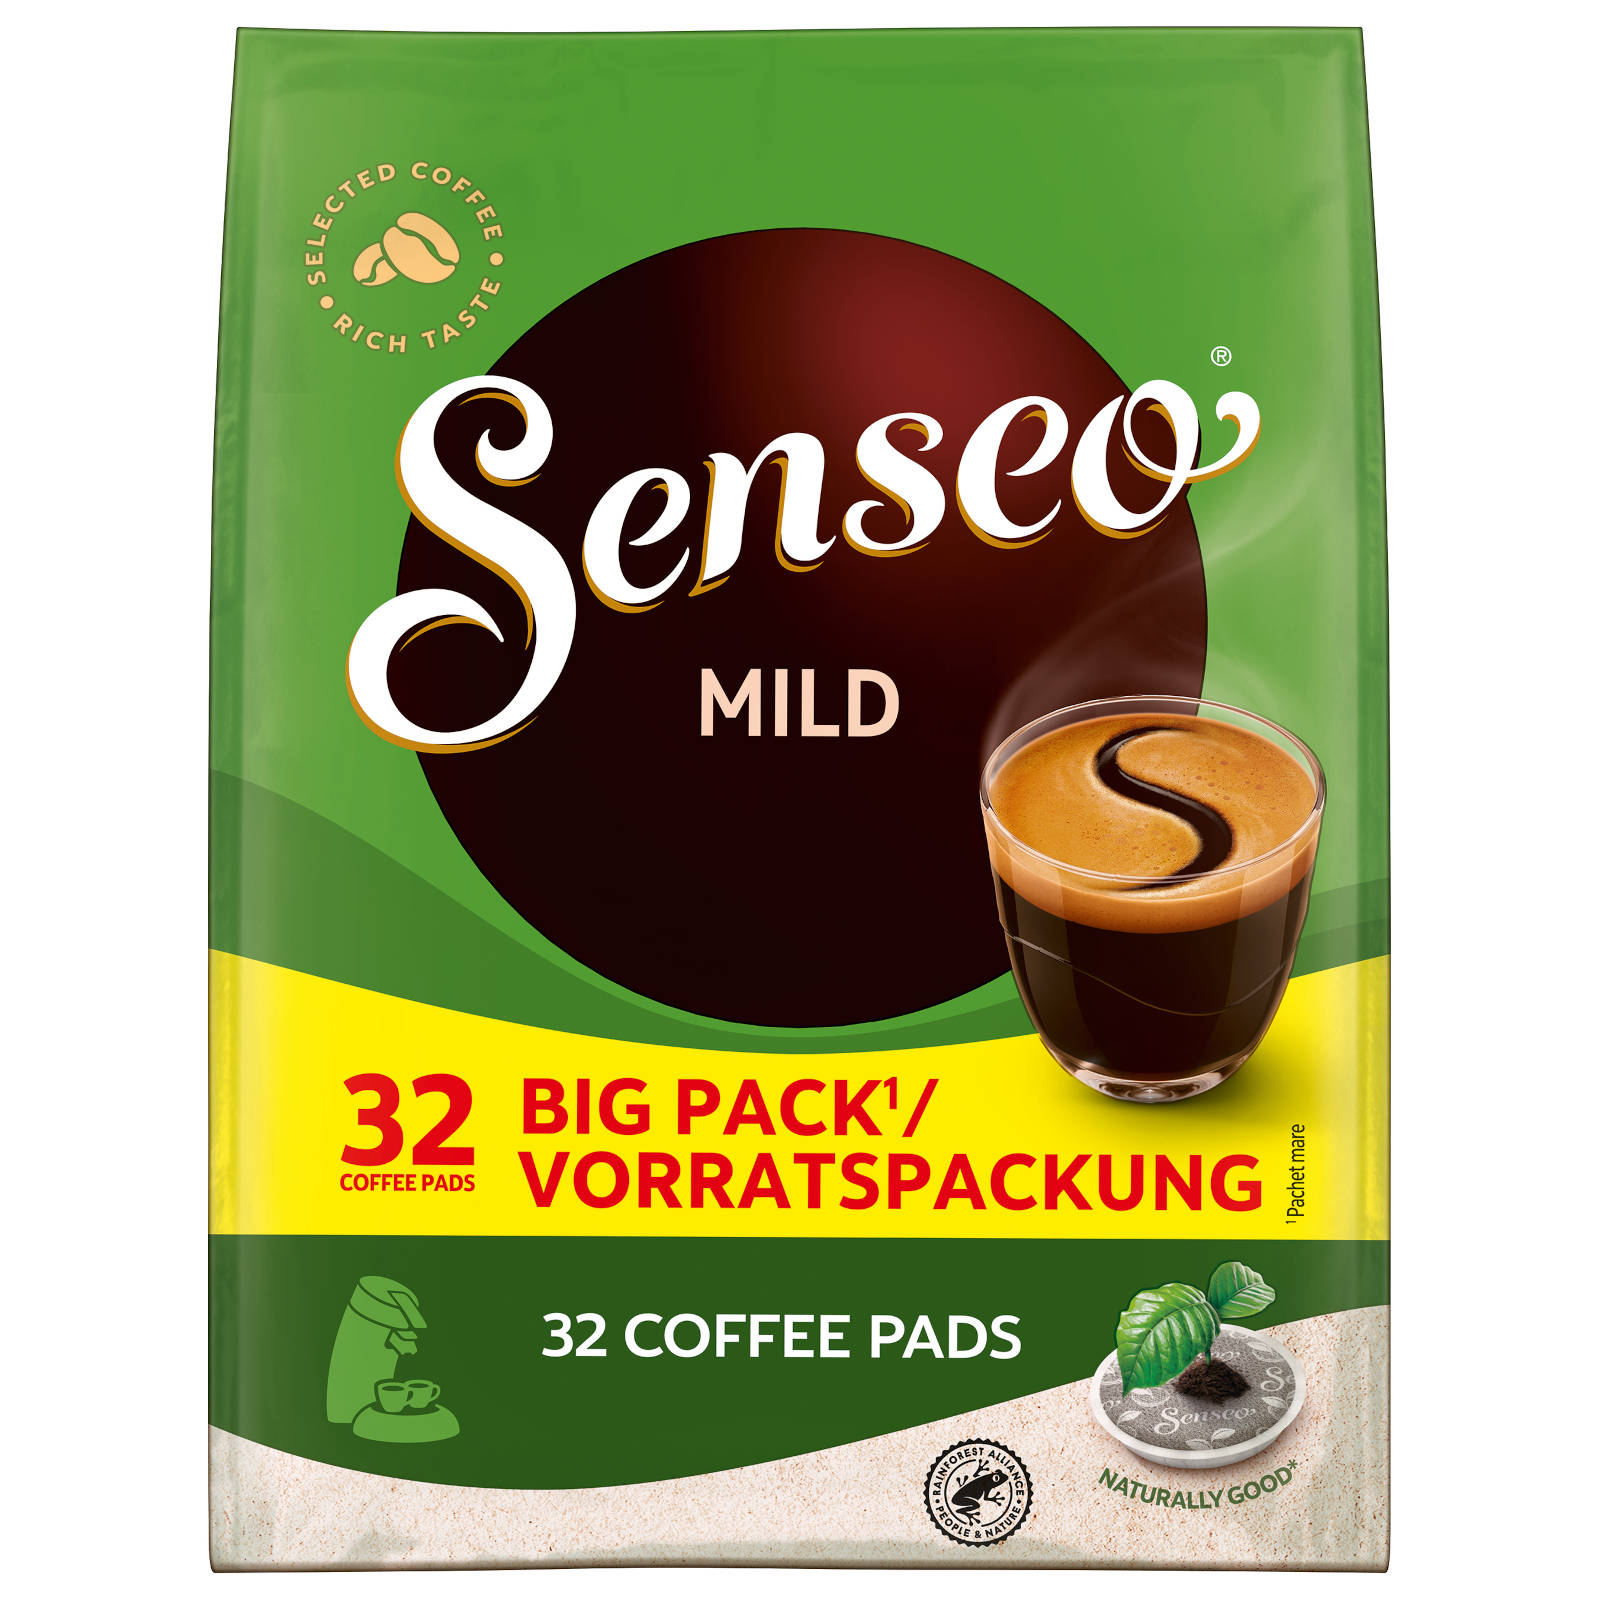 Vorteilspack Kaffeepads 32 (Senseo Padmaschine) Getränke SENSEO 5 Mild x